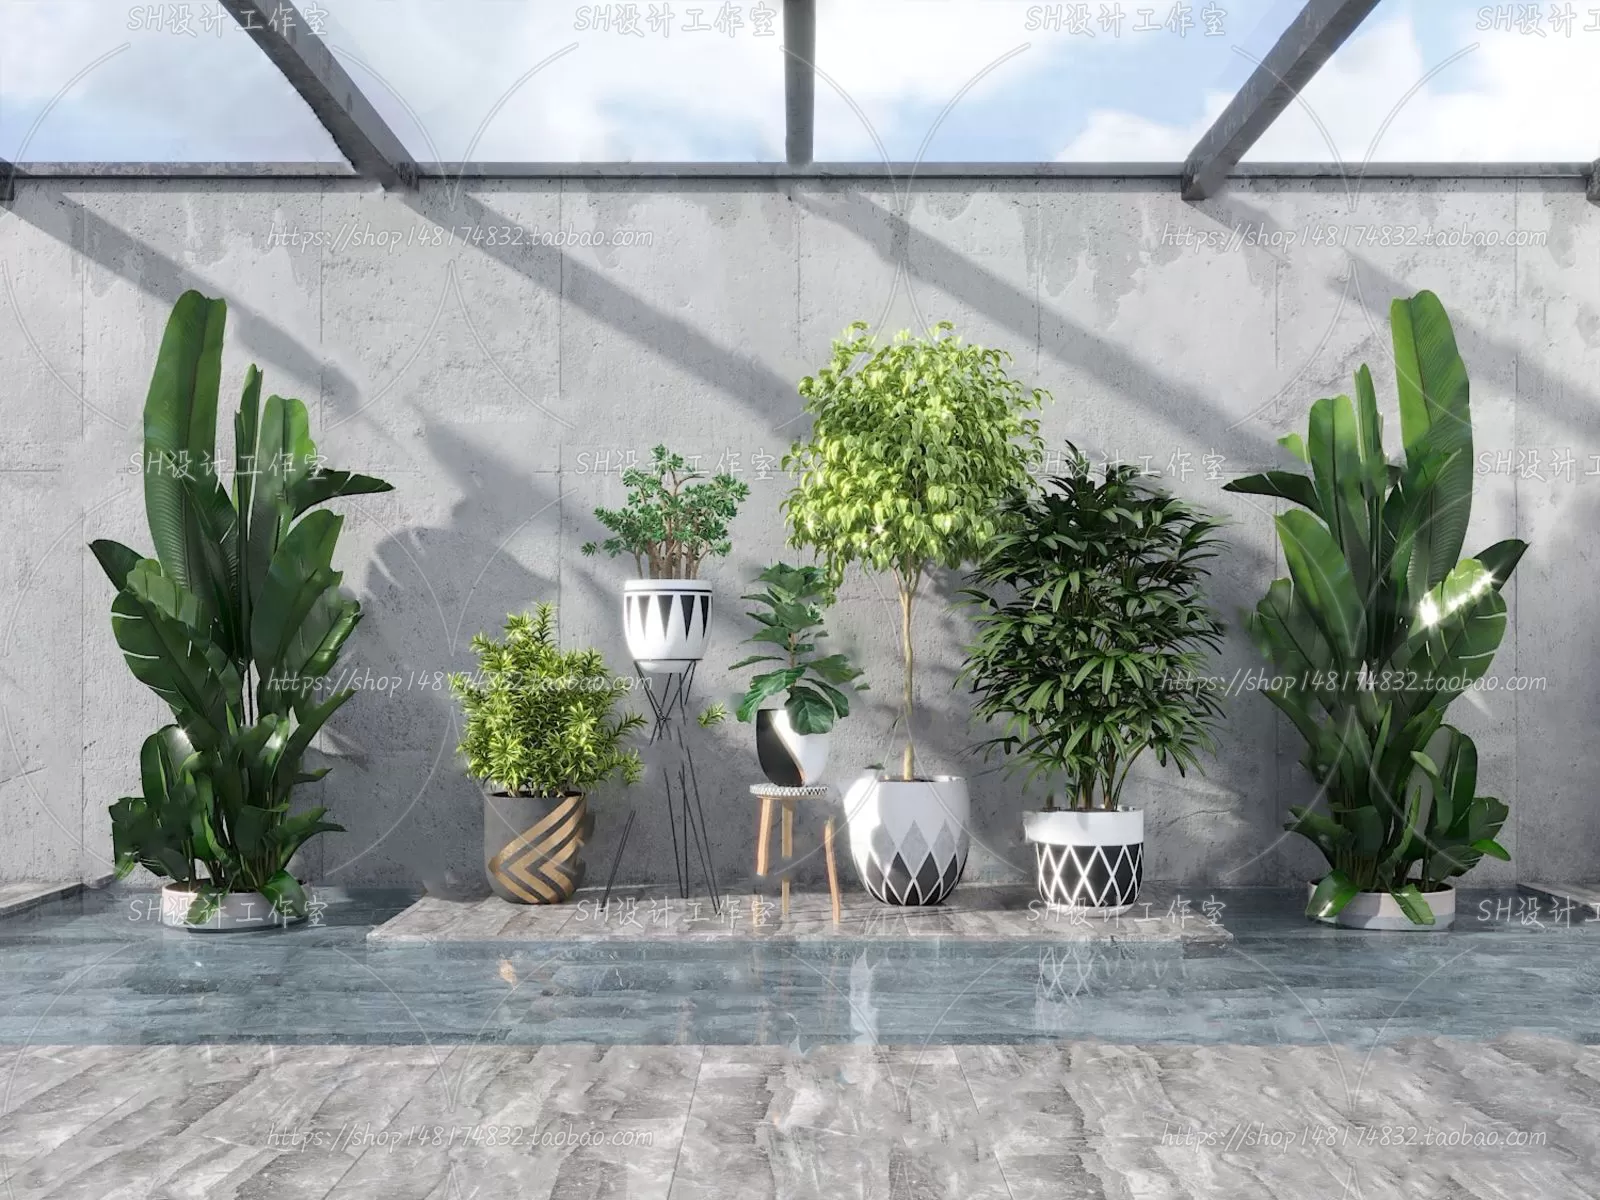 PLANT 3D MODELS – 073